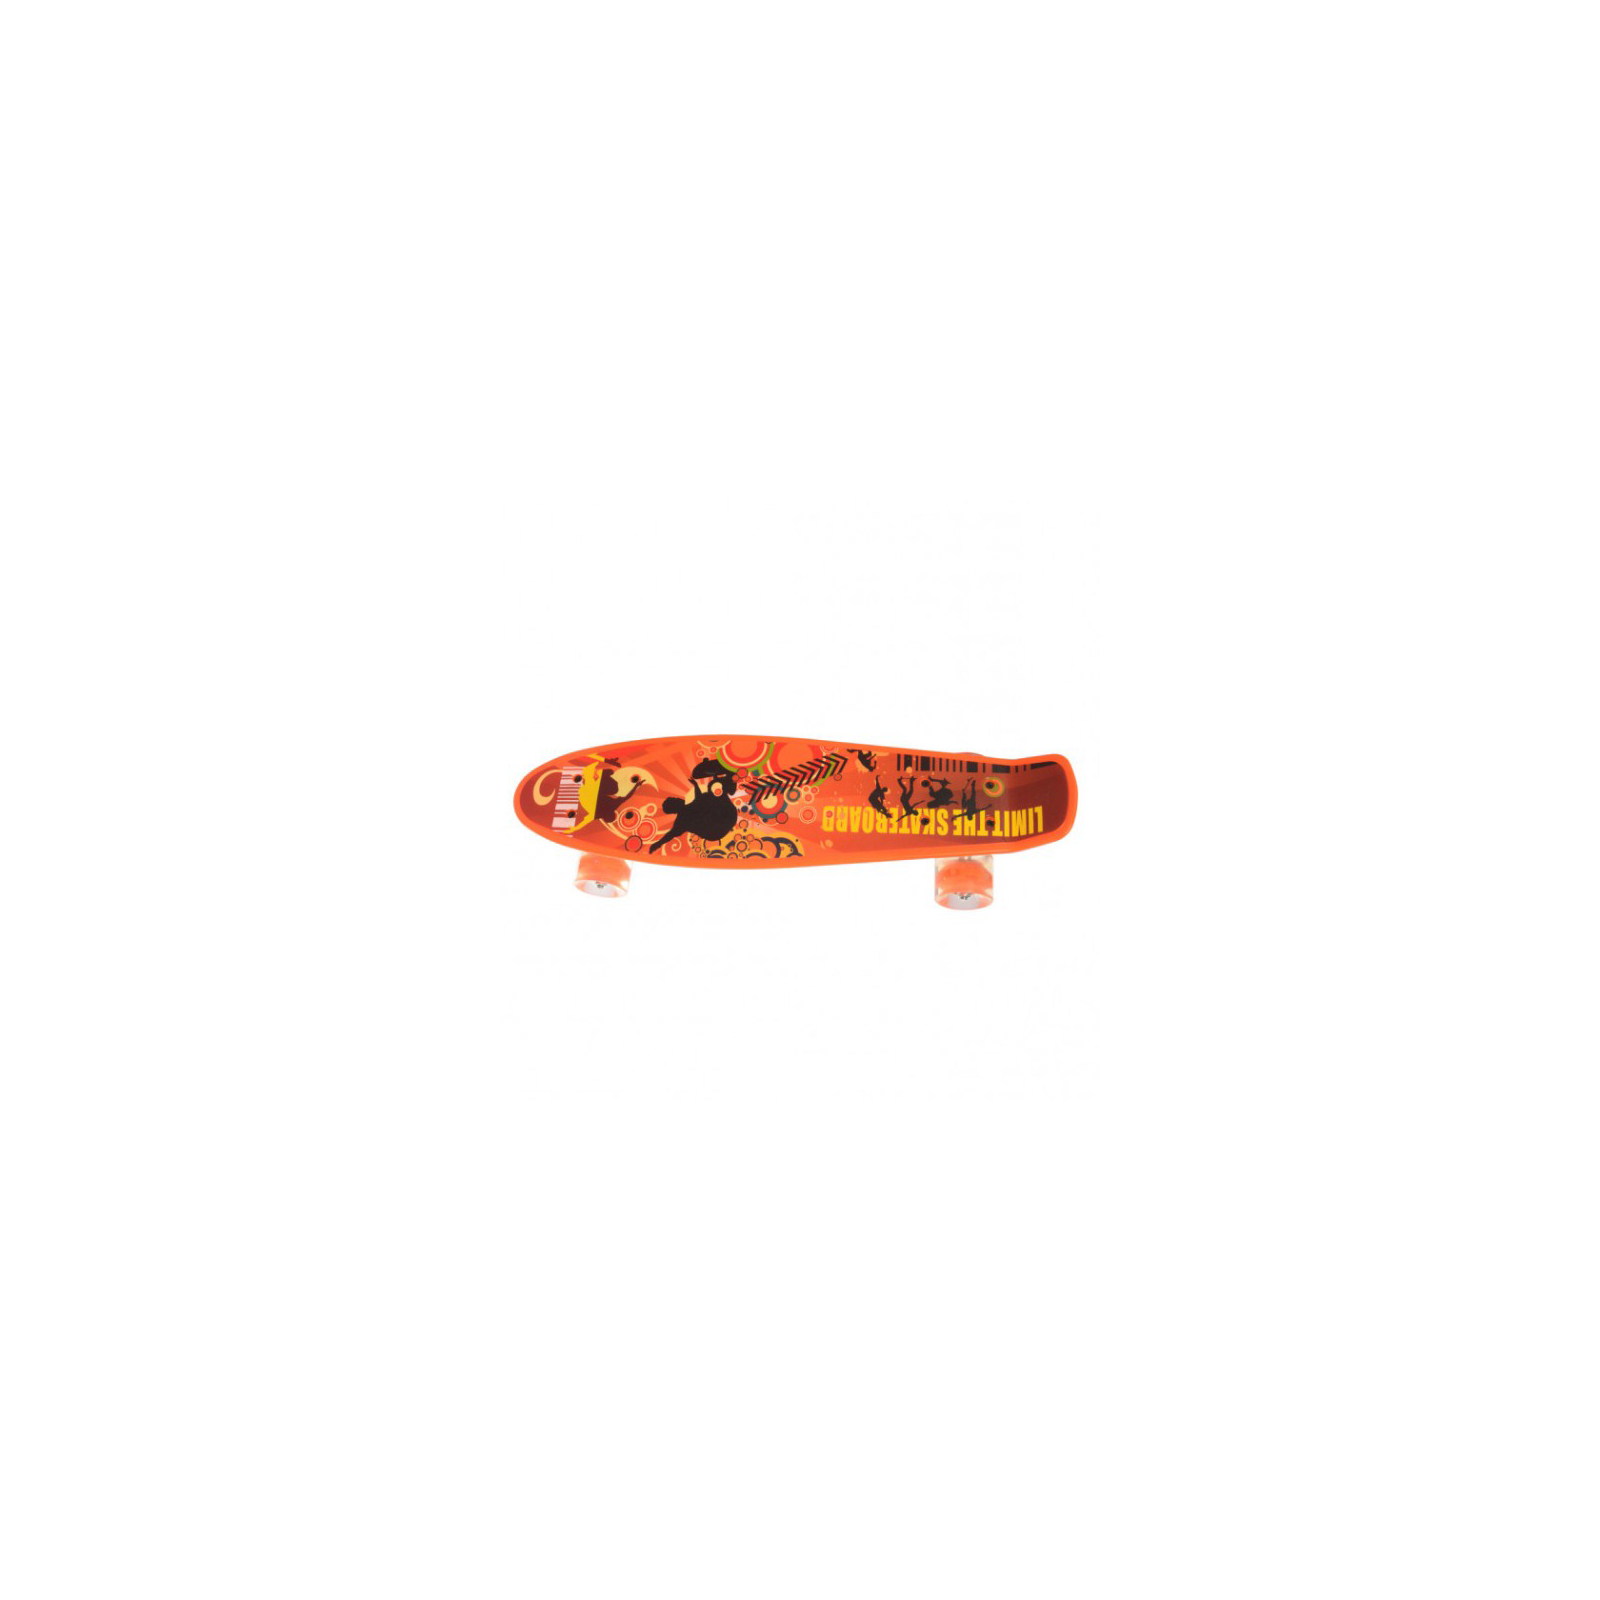 Скейтборд детский Profi MS 0749-1 orange изображение 2